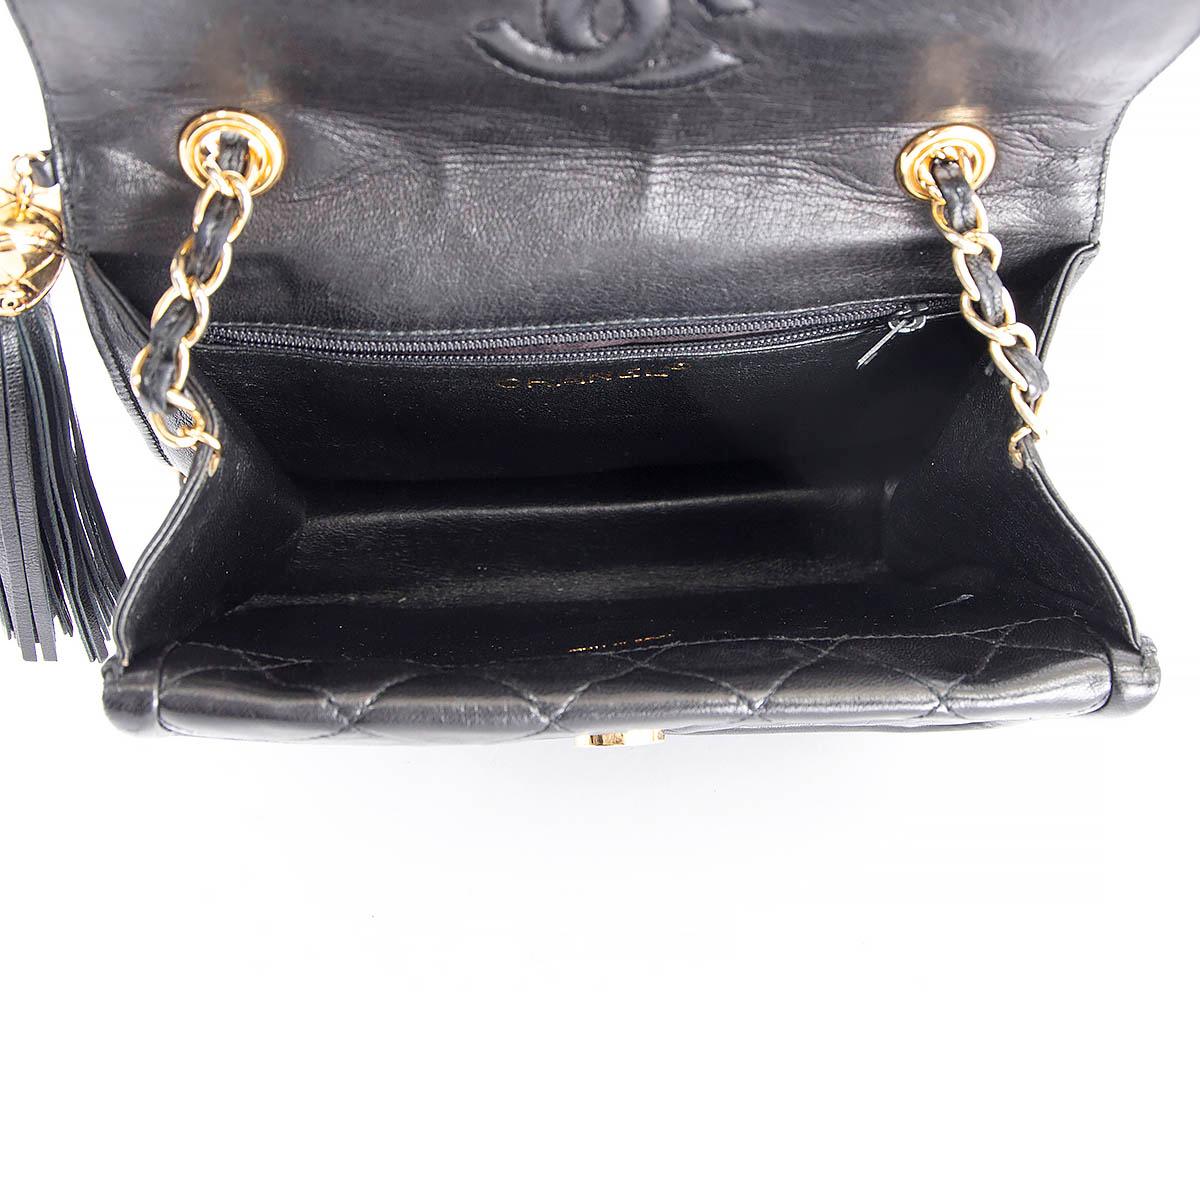 CHANEL black leather CROSSOVER FLAP & TASSEL Shoulder Bag 1989-1991 1